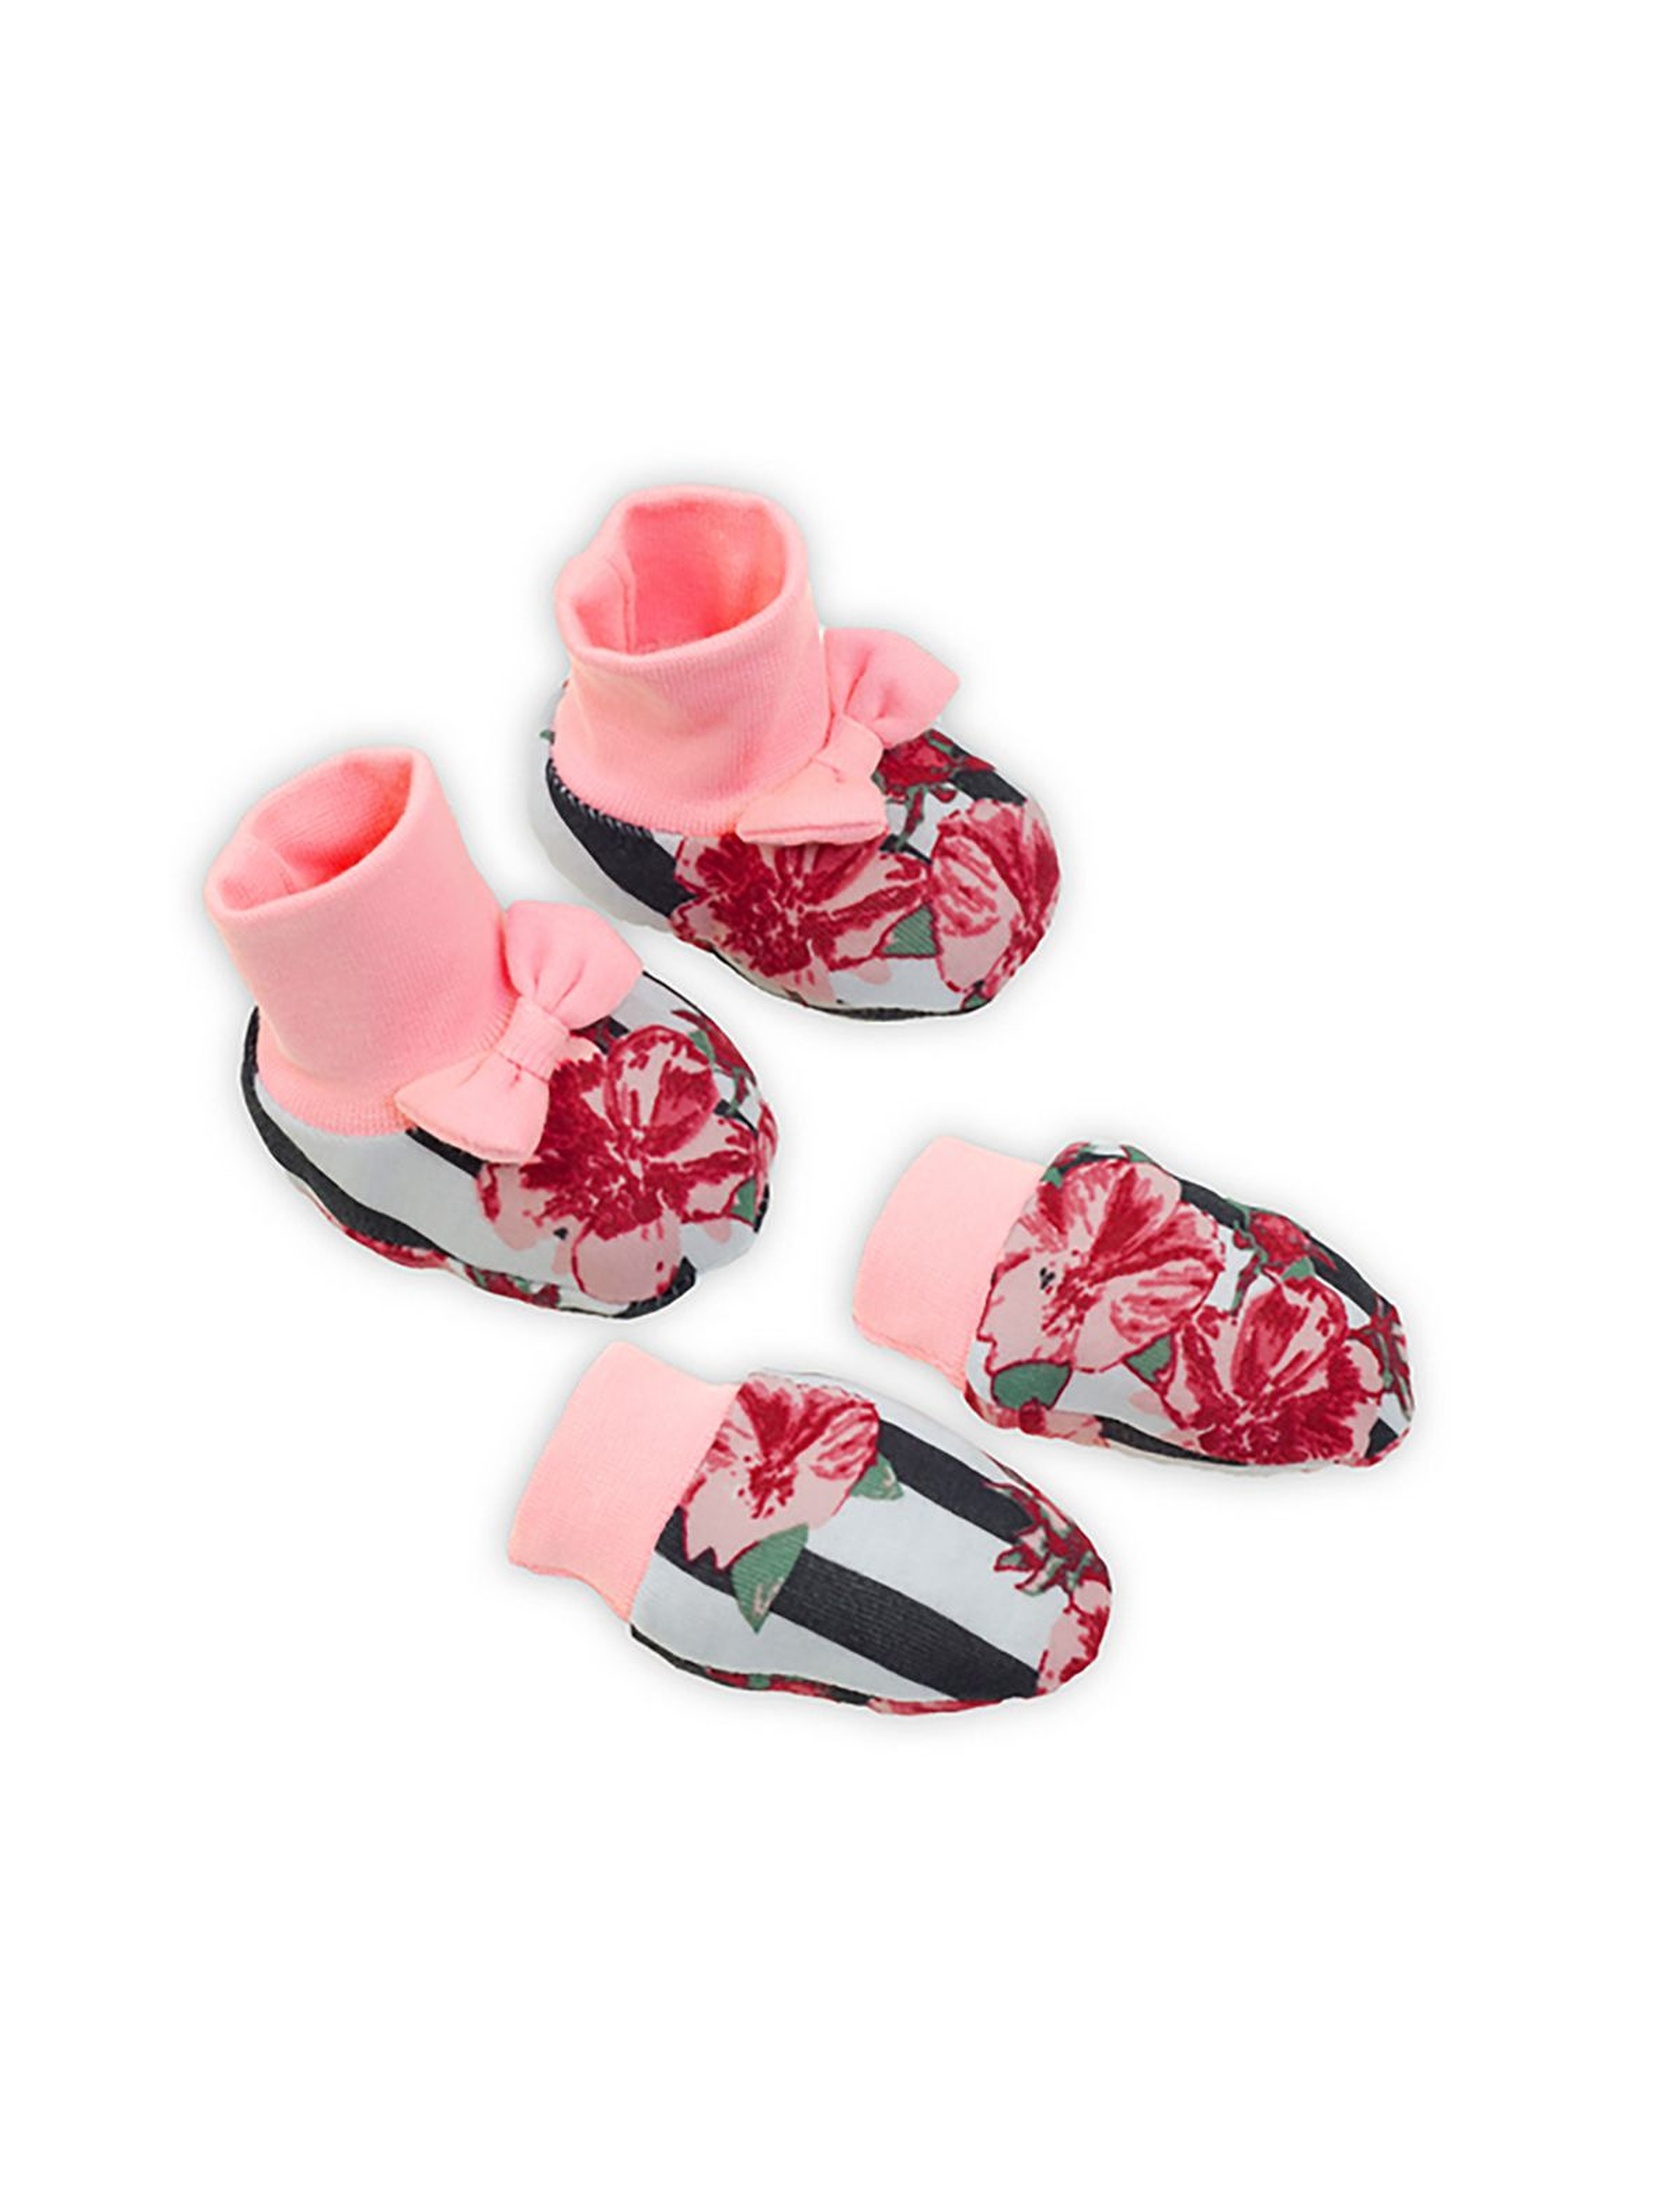 Komplet niemowlęcy w kwiaty i paski - rękawiczki + buciki - kolorowy